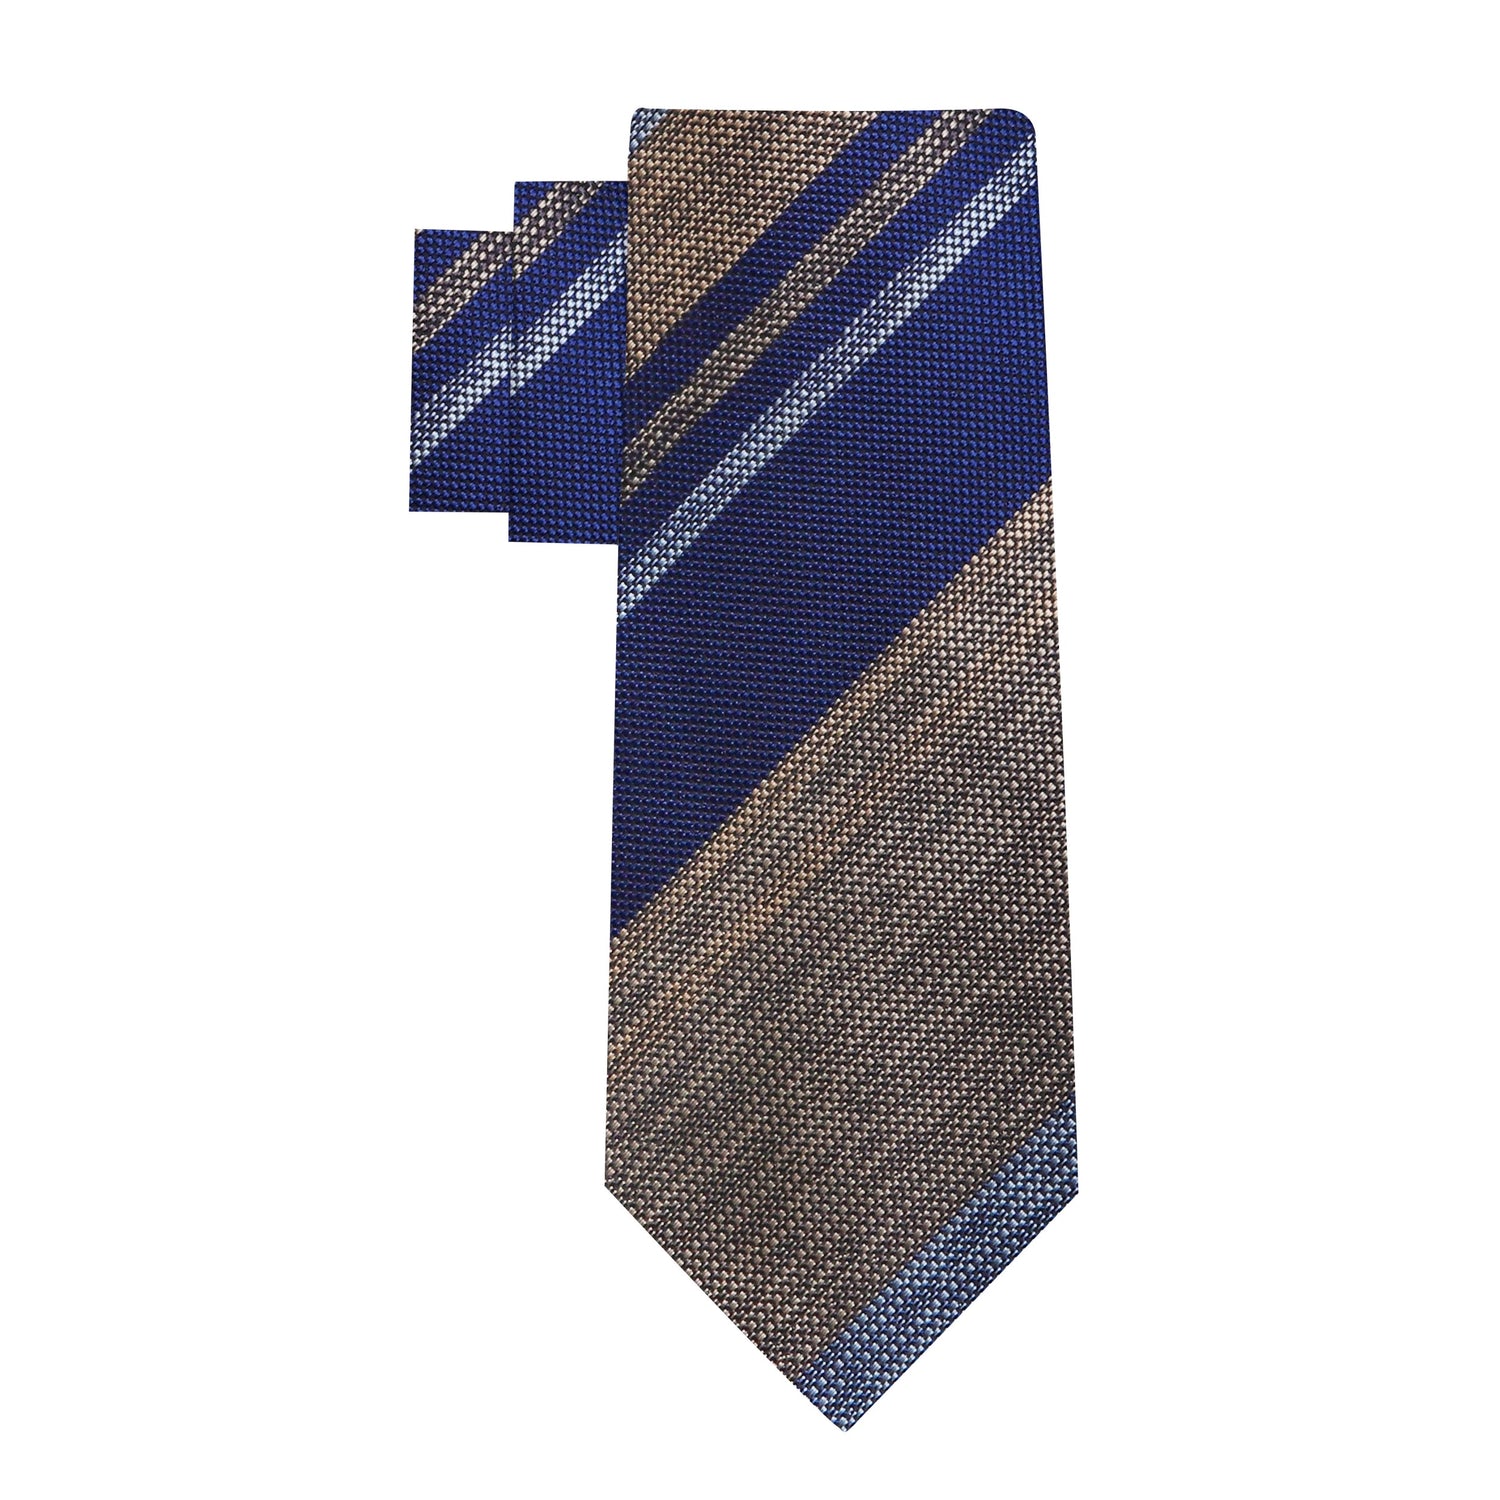 Alt view: Blue, Brown, Grey Stripes Necktie